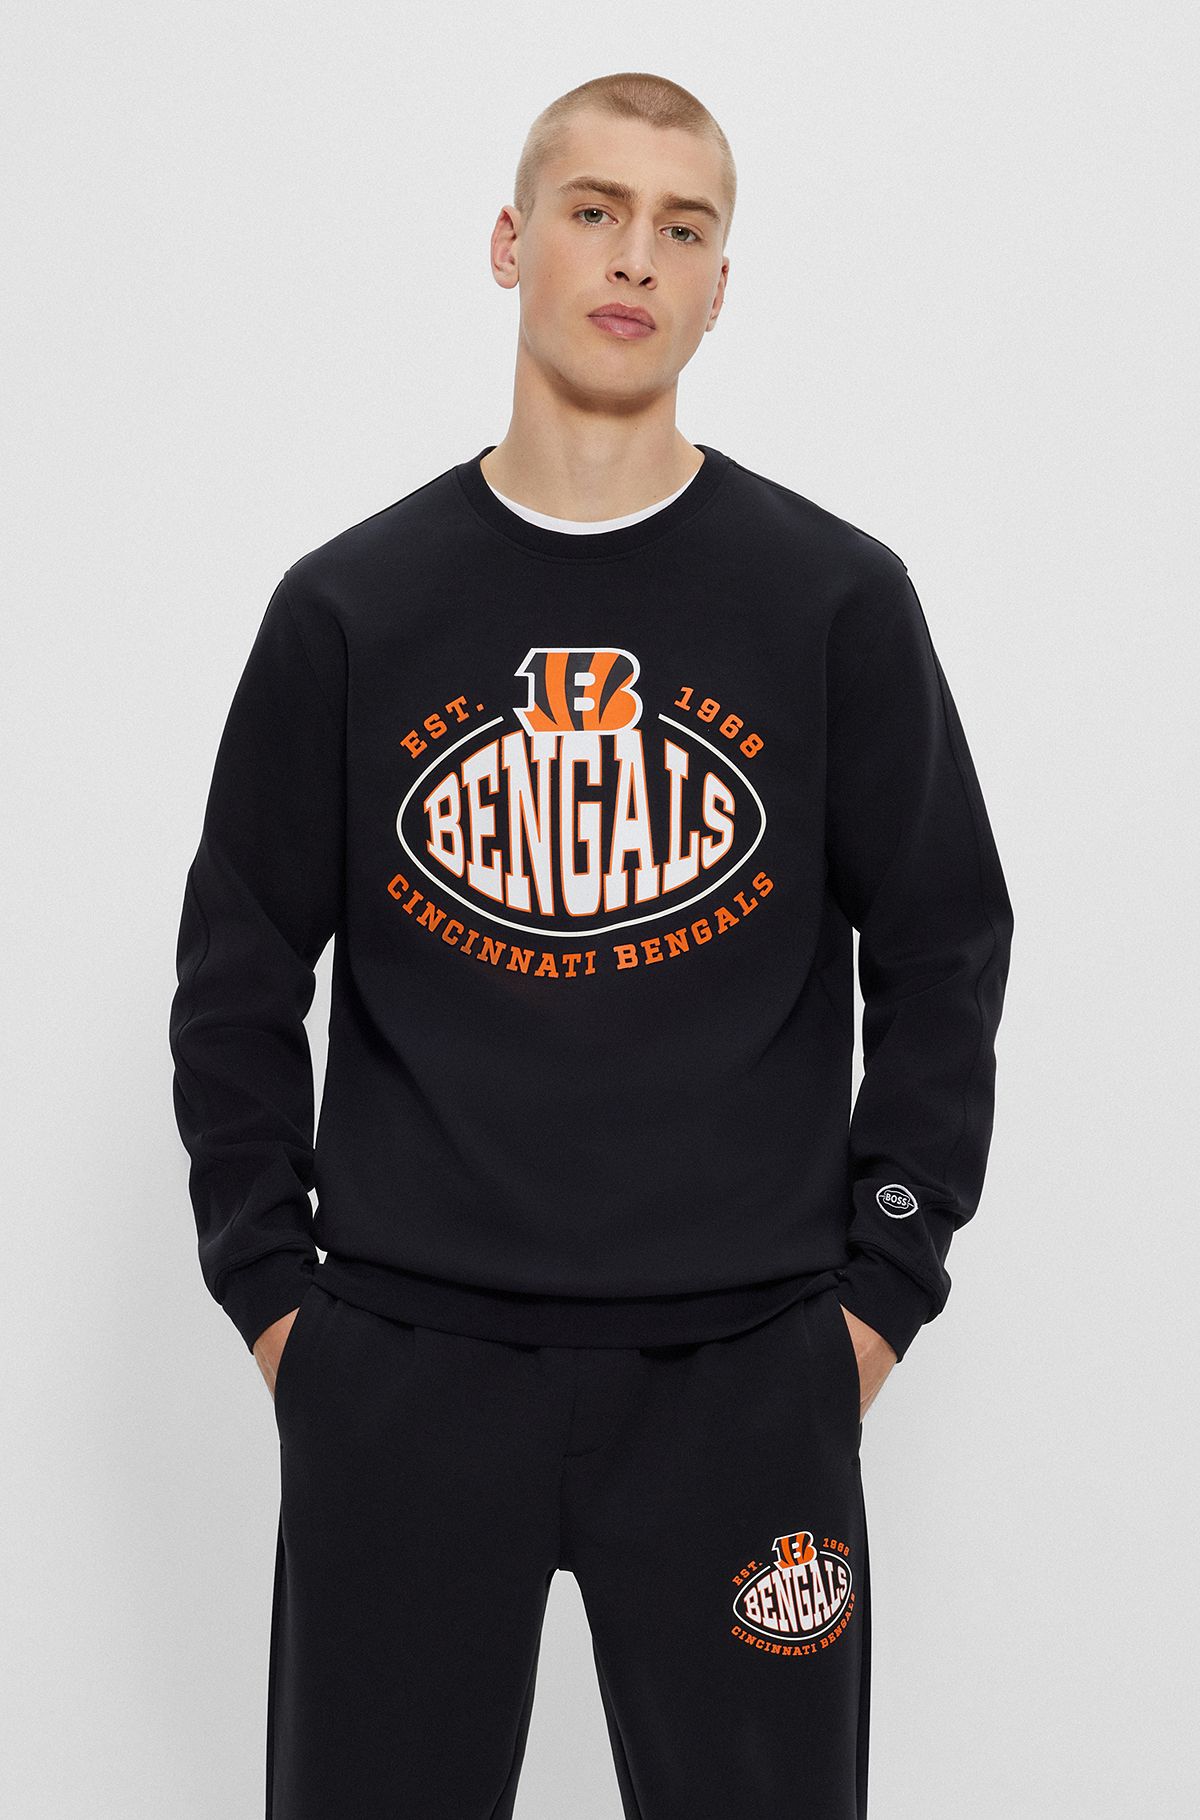 Sweat en coton mélangé BOSS x NFL avec logos du partenariat, Bengals